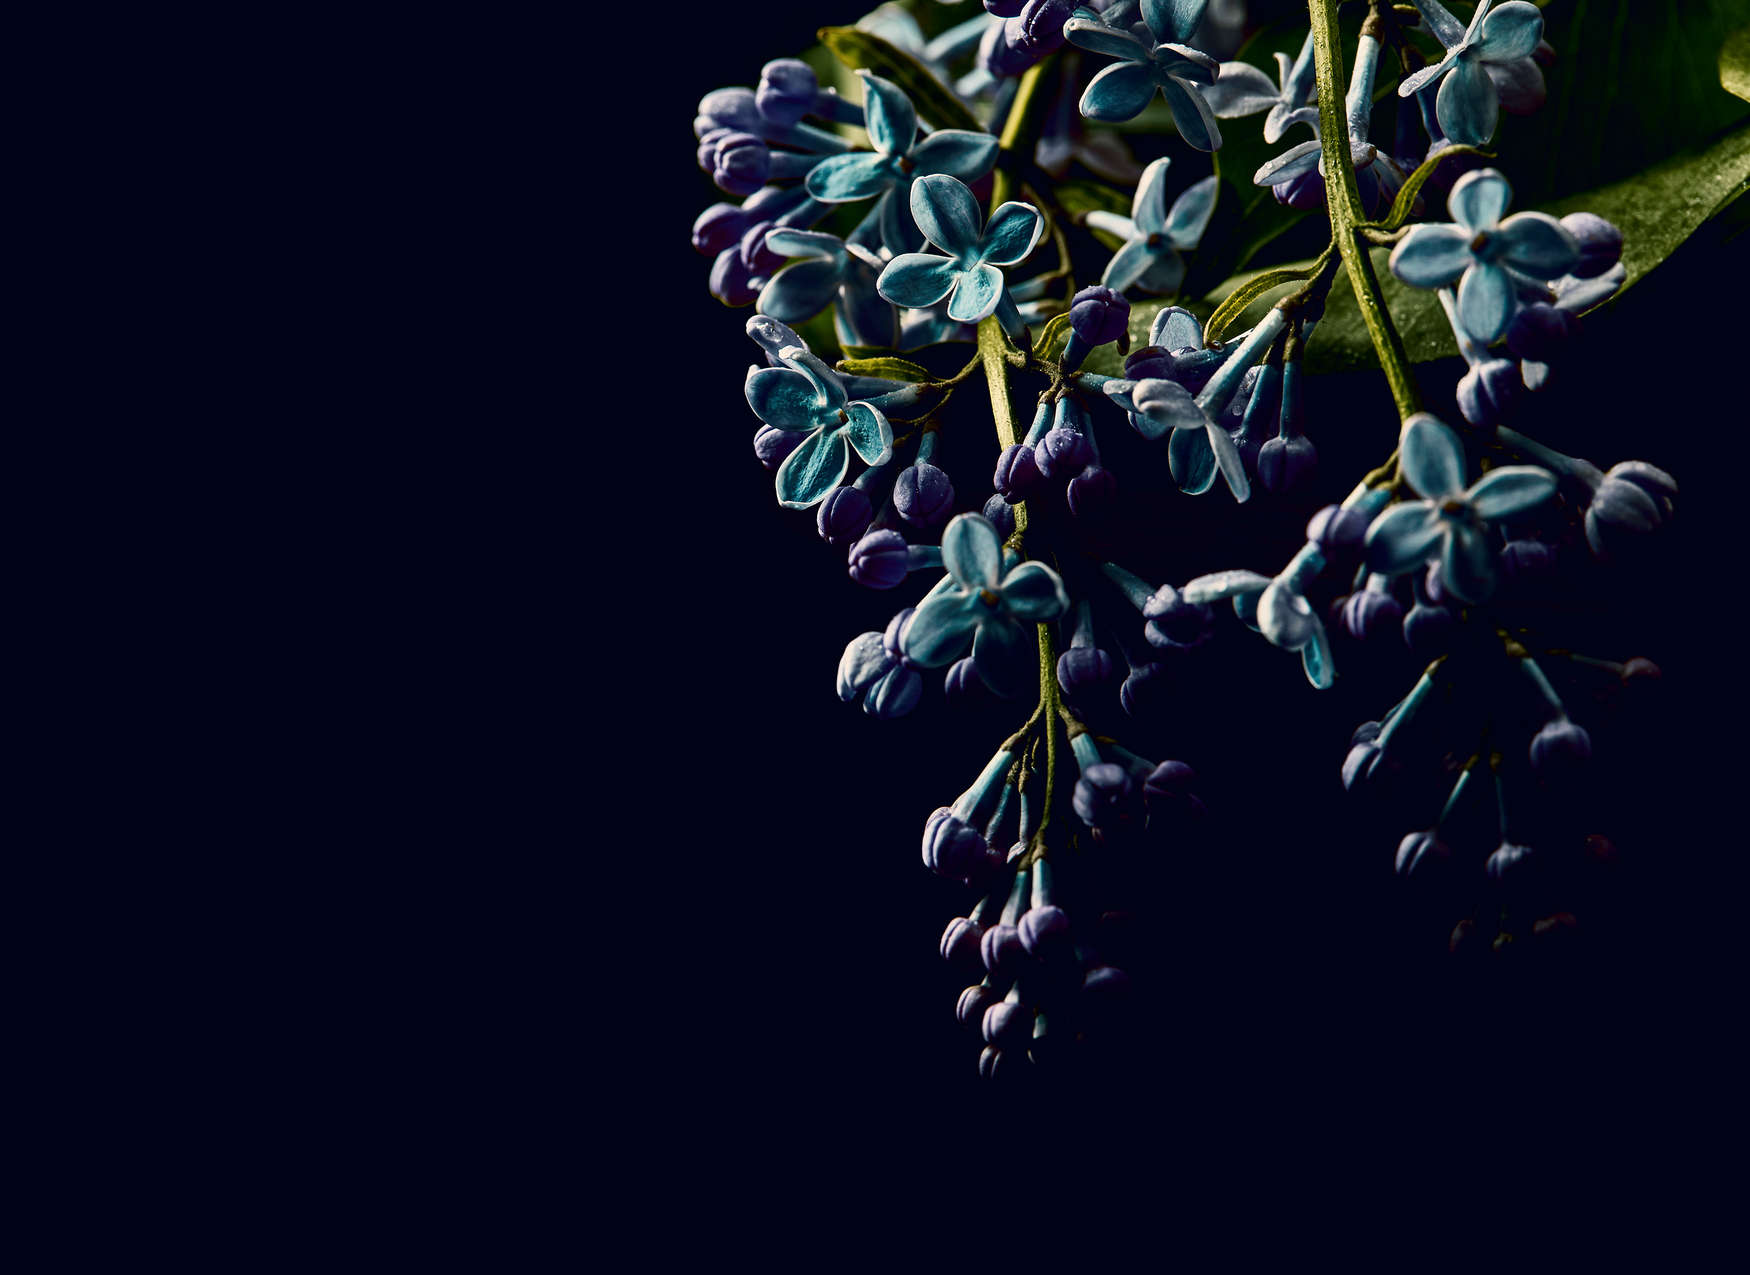             Fototapete Blumen auf schwarzen Hintergrund Close-Up – Blau, Grün, Schwarz
        